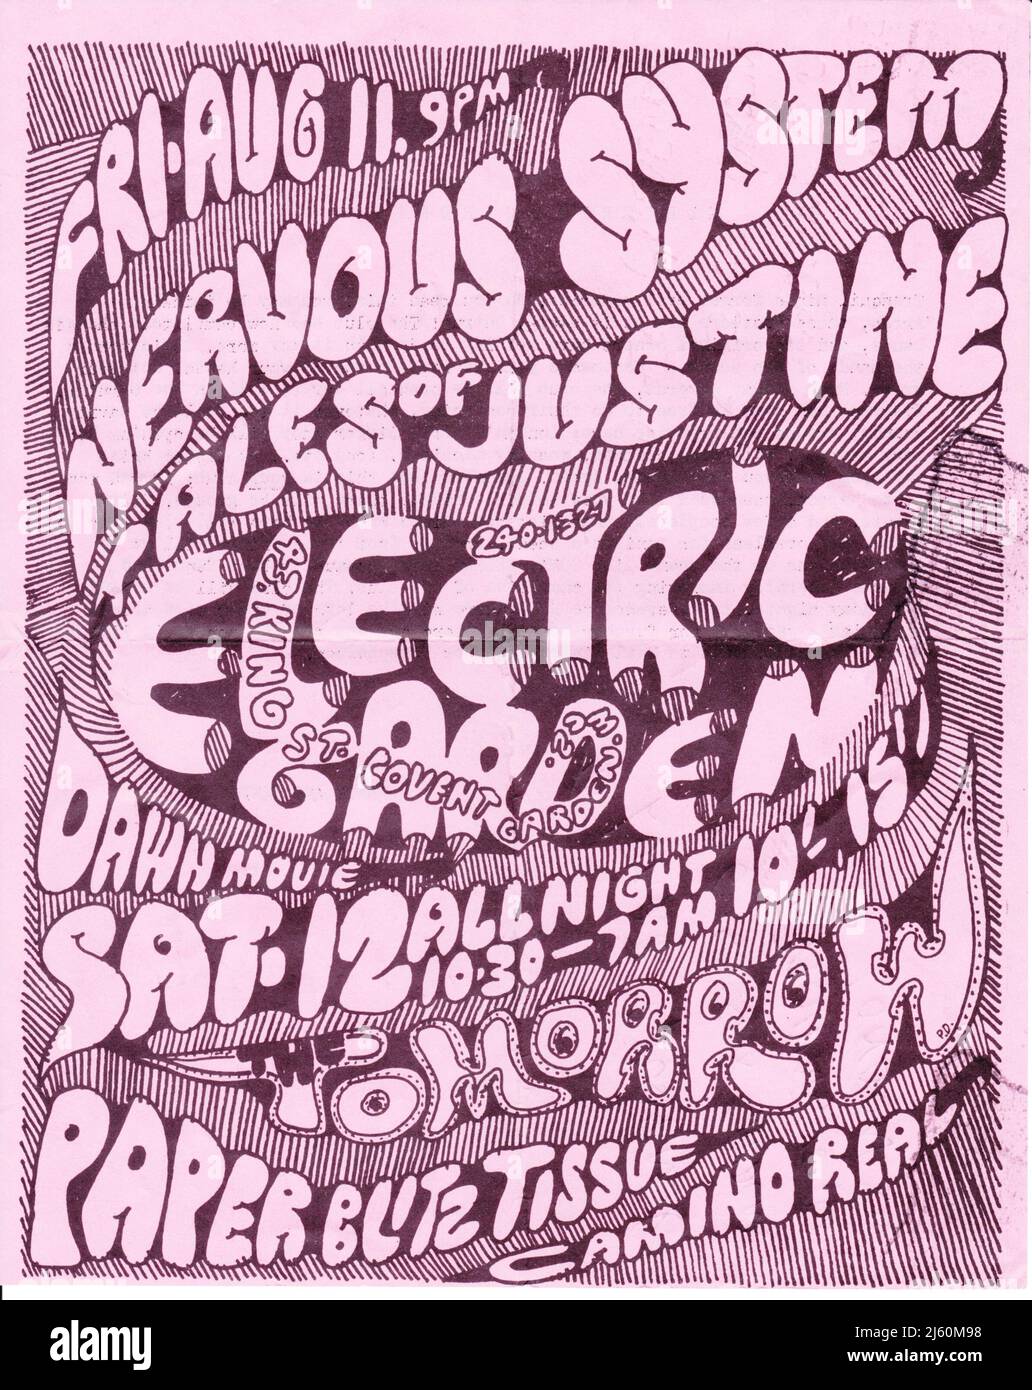 Affiche pour un concert de toute la nuit au Electric Garden, Londres, en août 1967. Banque D'Images